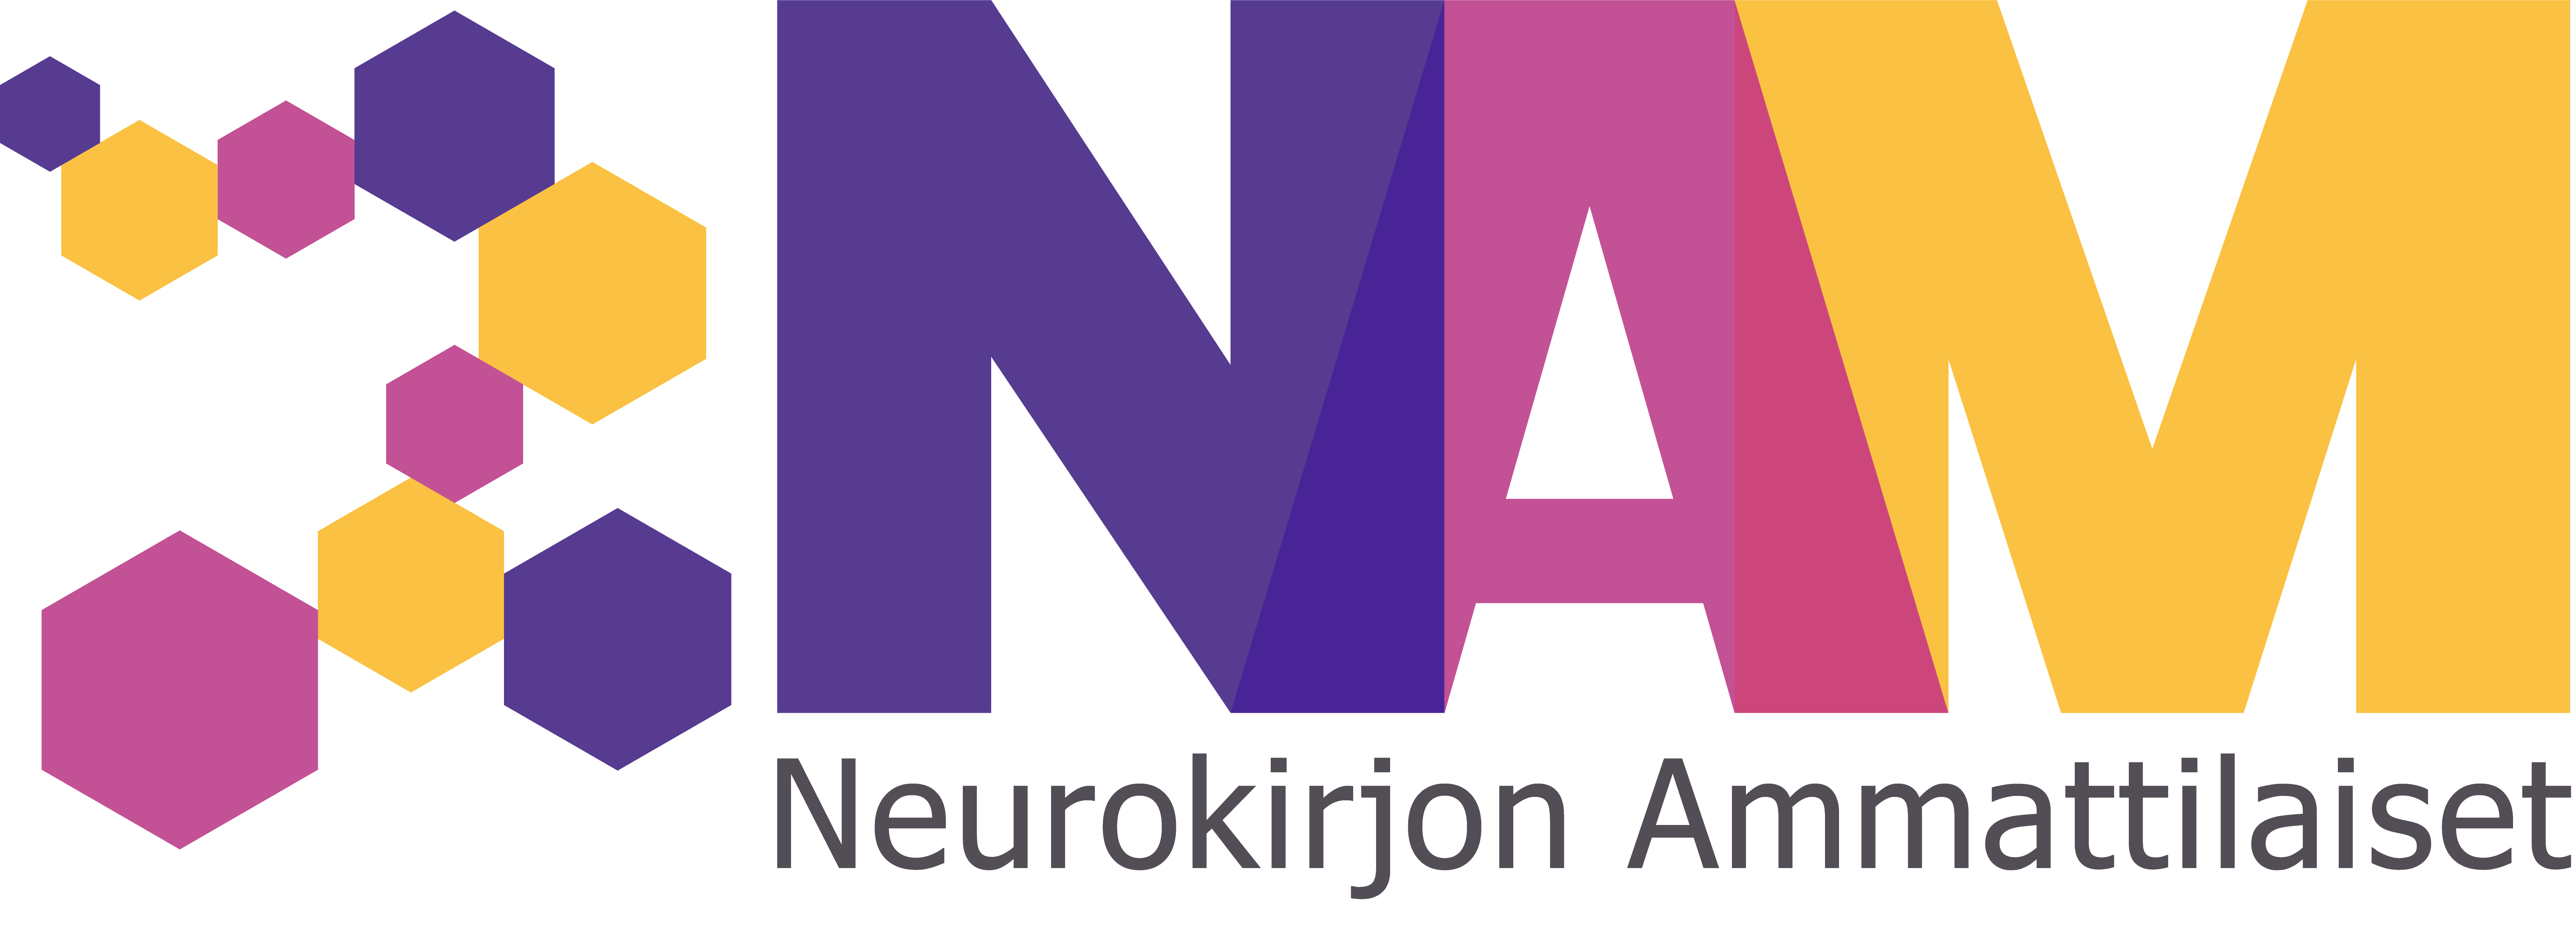 NAM Neurokirjon Ammattilaiset ry:n logo. Logossa keltaisia, pinkkejä ja violetteja hexagon kuvioita ja teksti Neurokirjon Ammattilaiset.